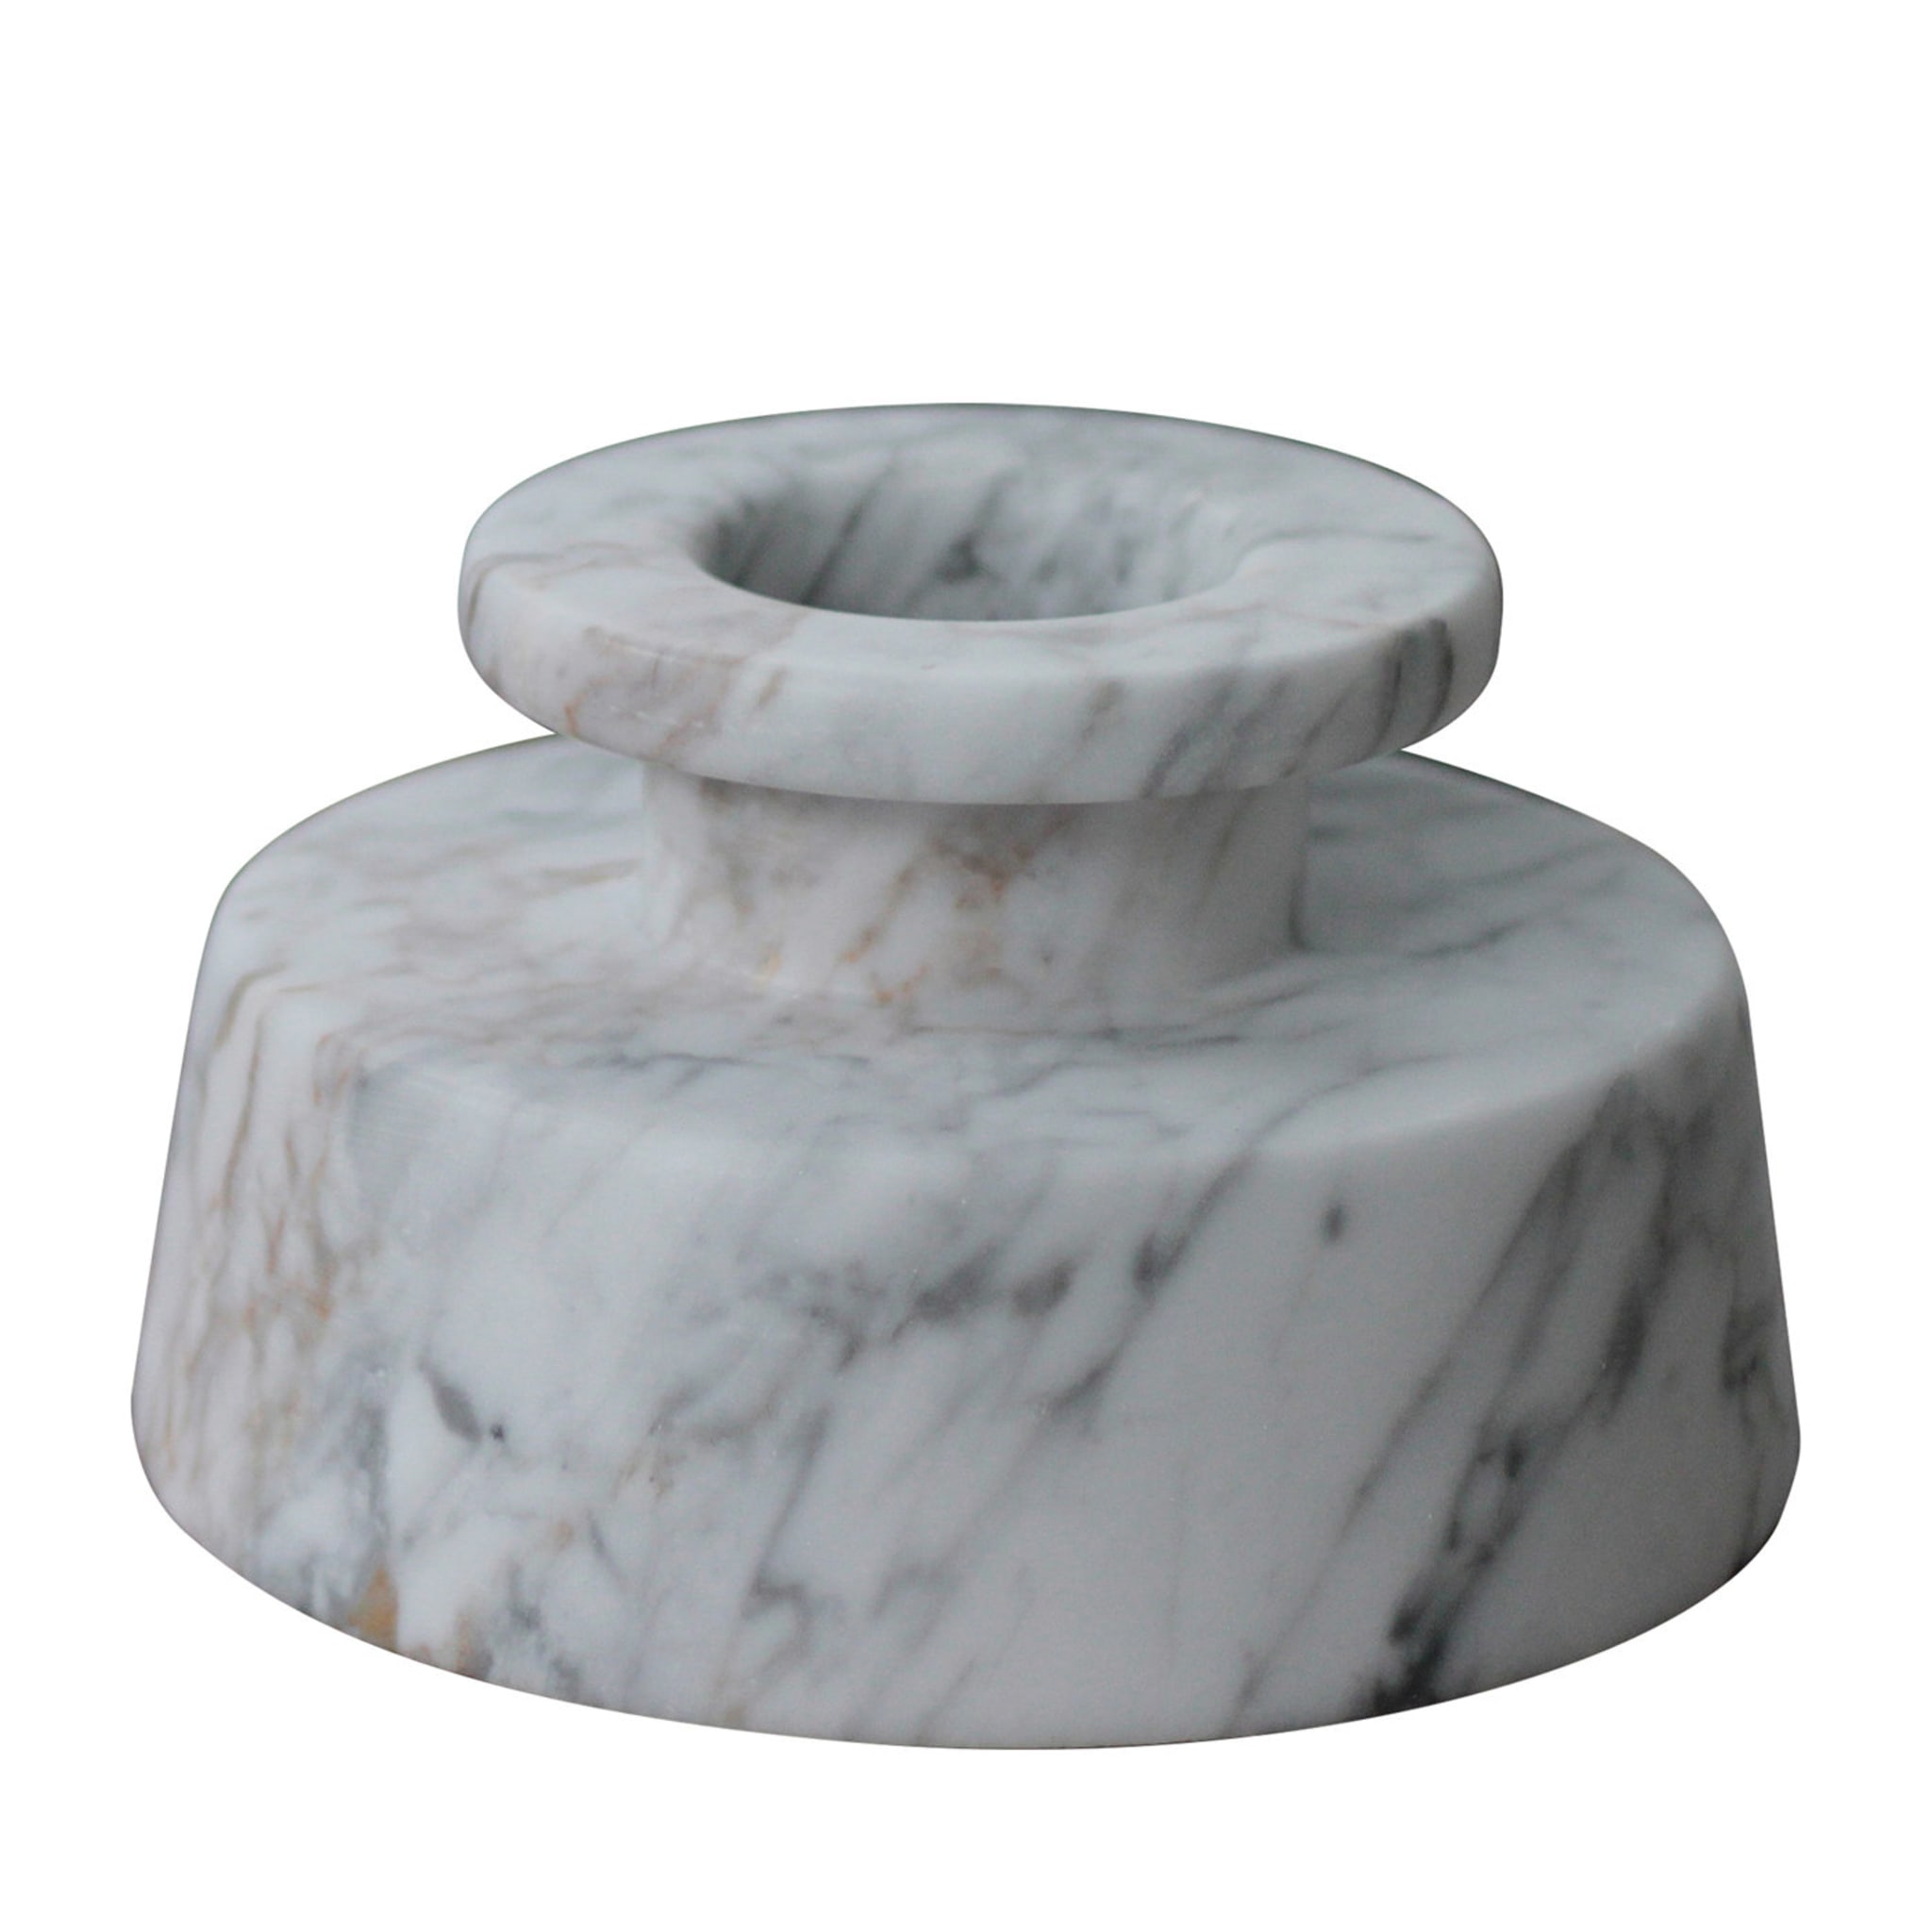 Vaso in marmo bianco di Carrara Bruciato - Vista principale